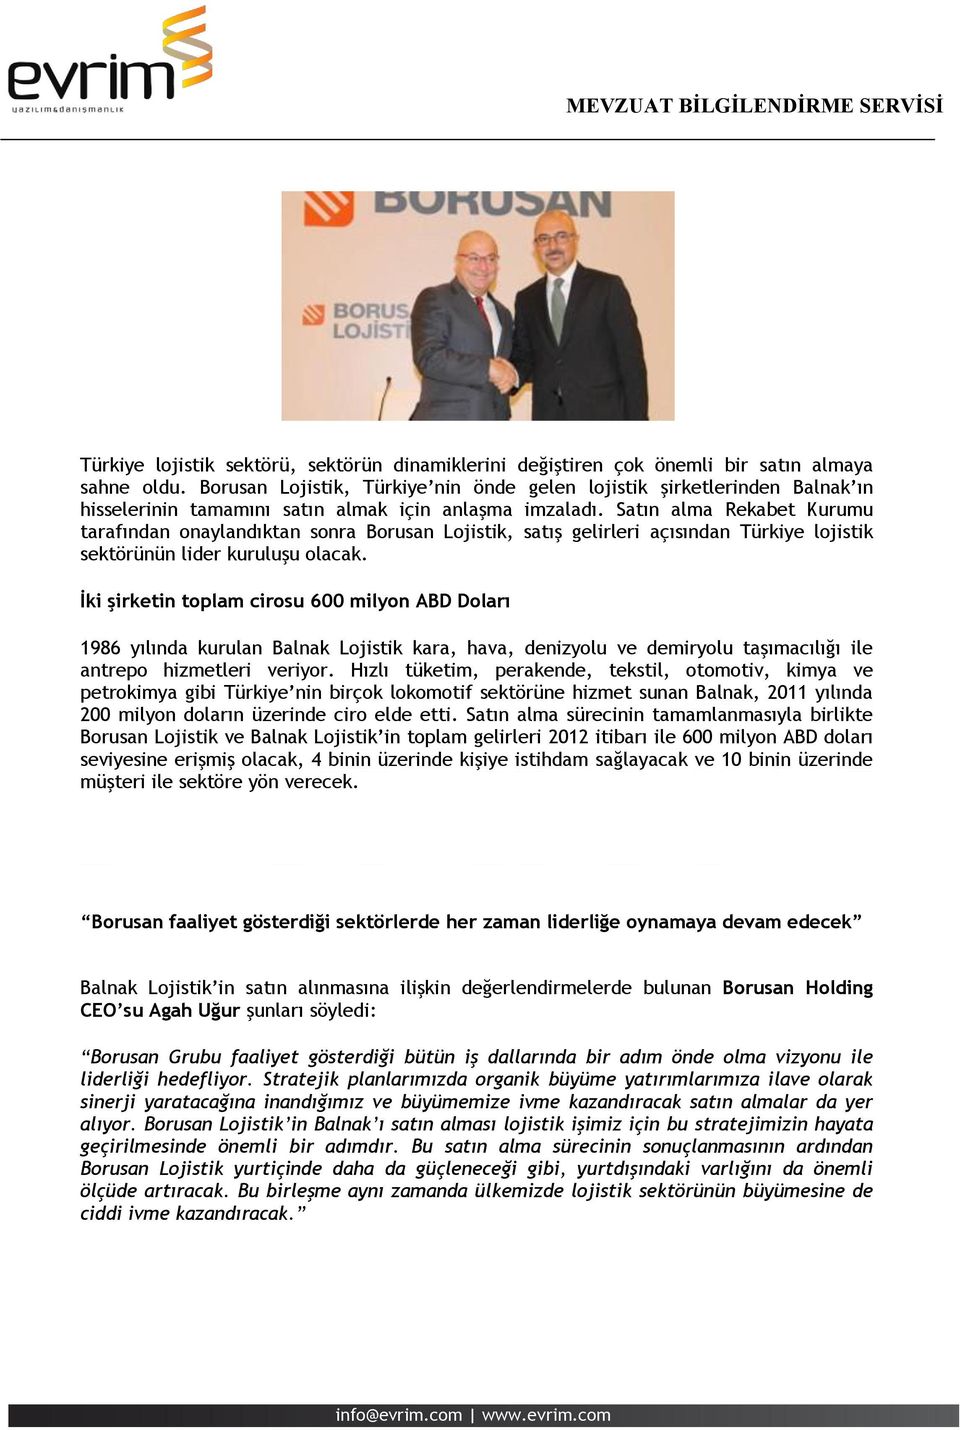 Satın alma Rekabet Kurumu tarafından onaylandıktan sonra Borusan Lojistik, satış gelirleri açısından Türkiye lojistik sektörünün lider kuruluşu olacak.